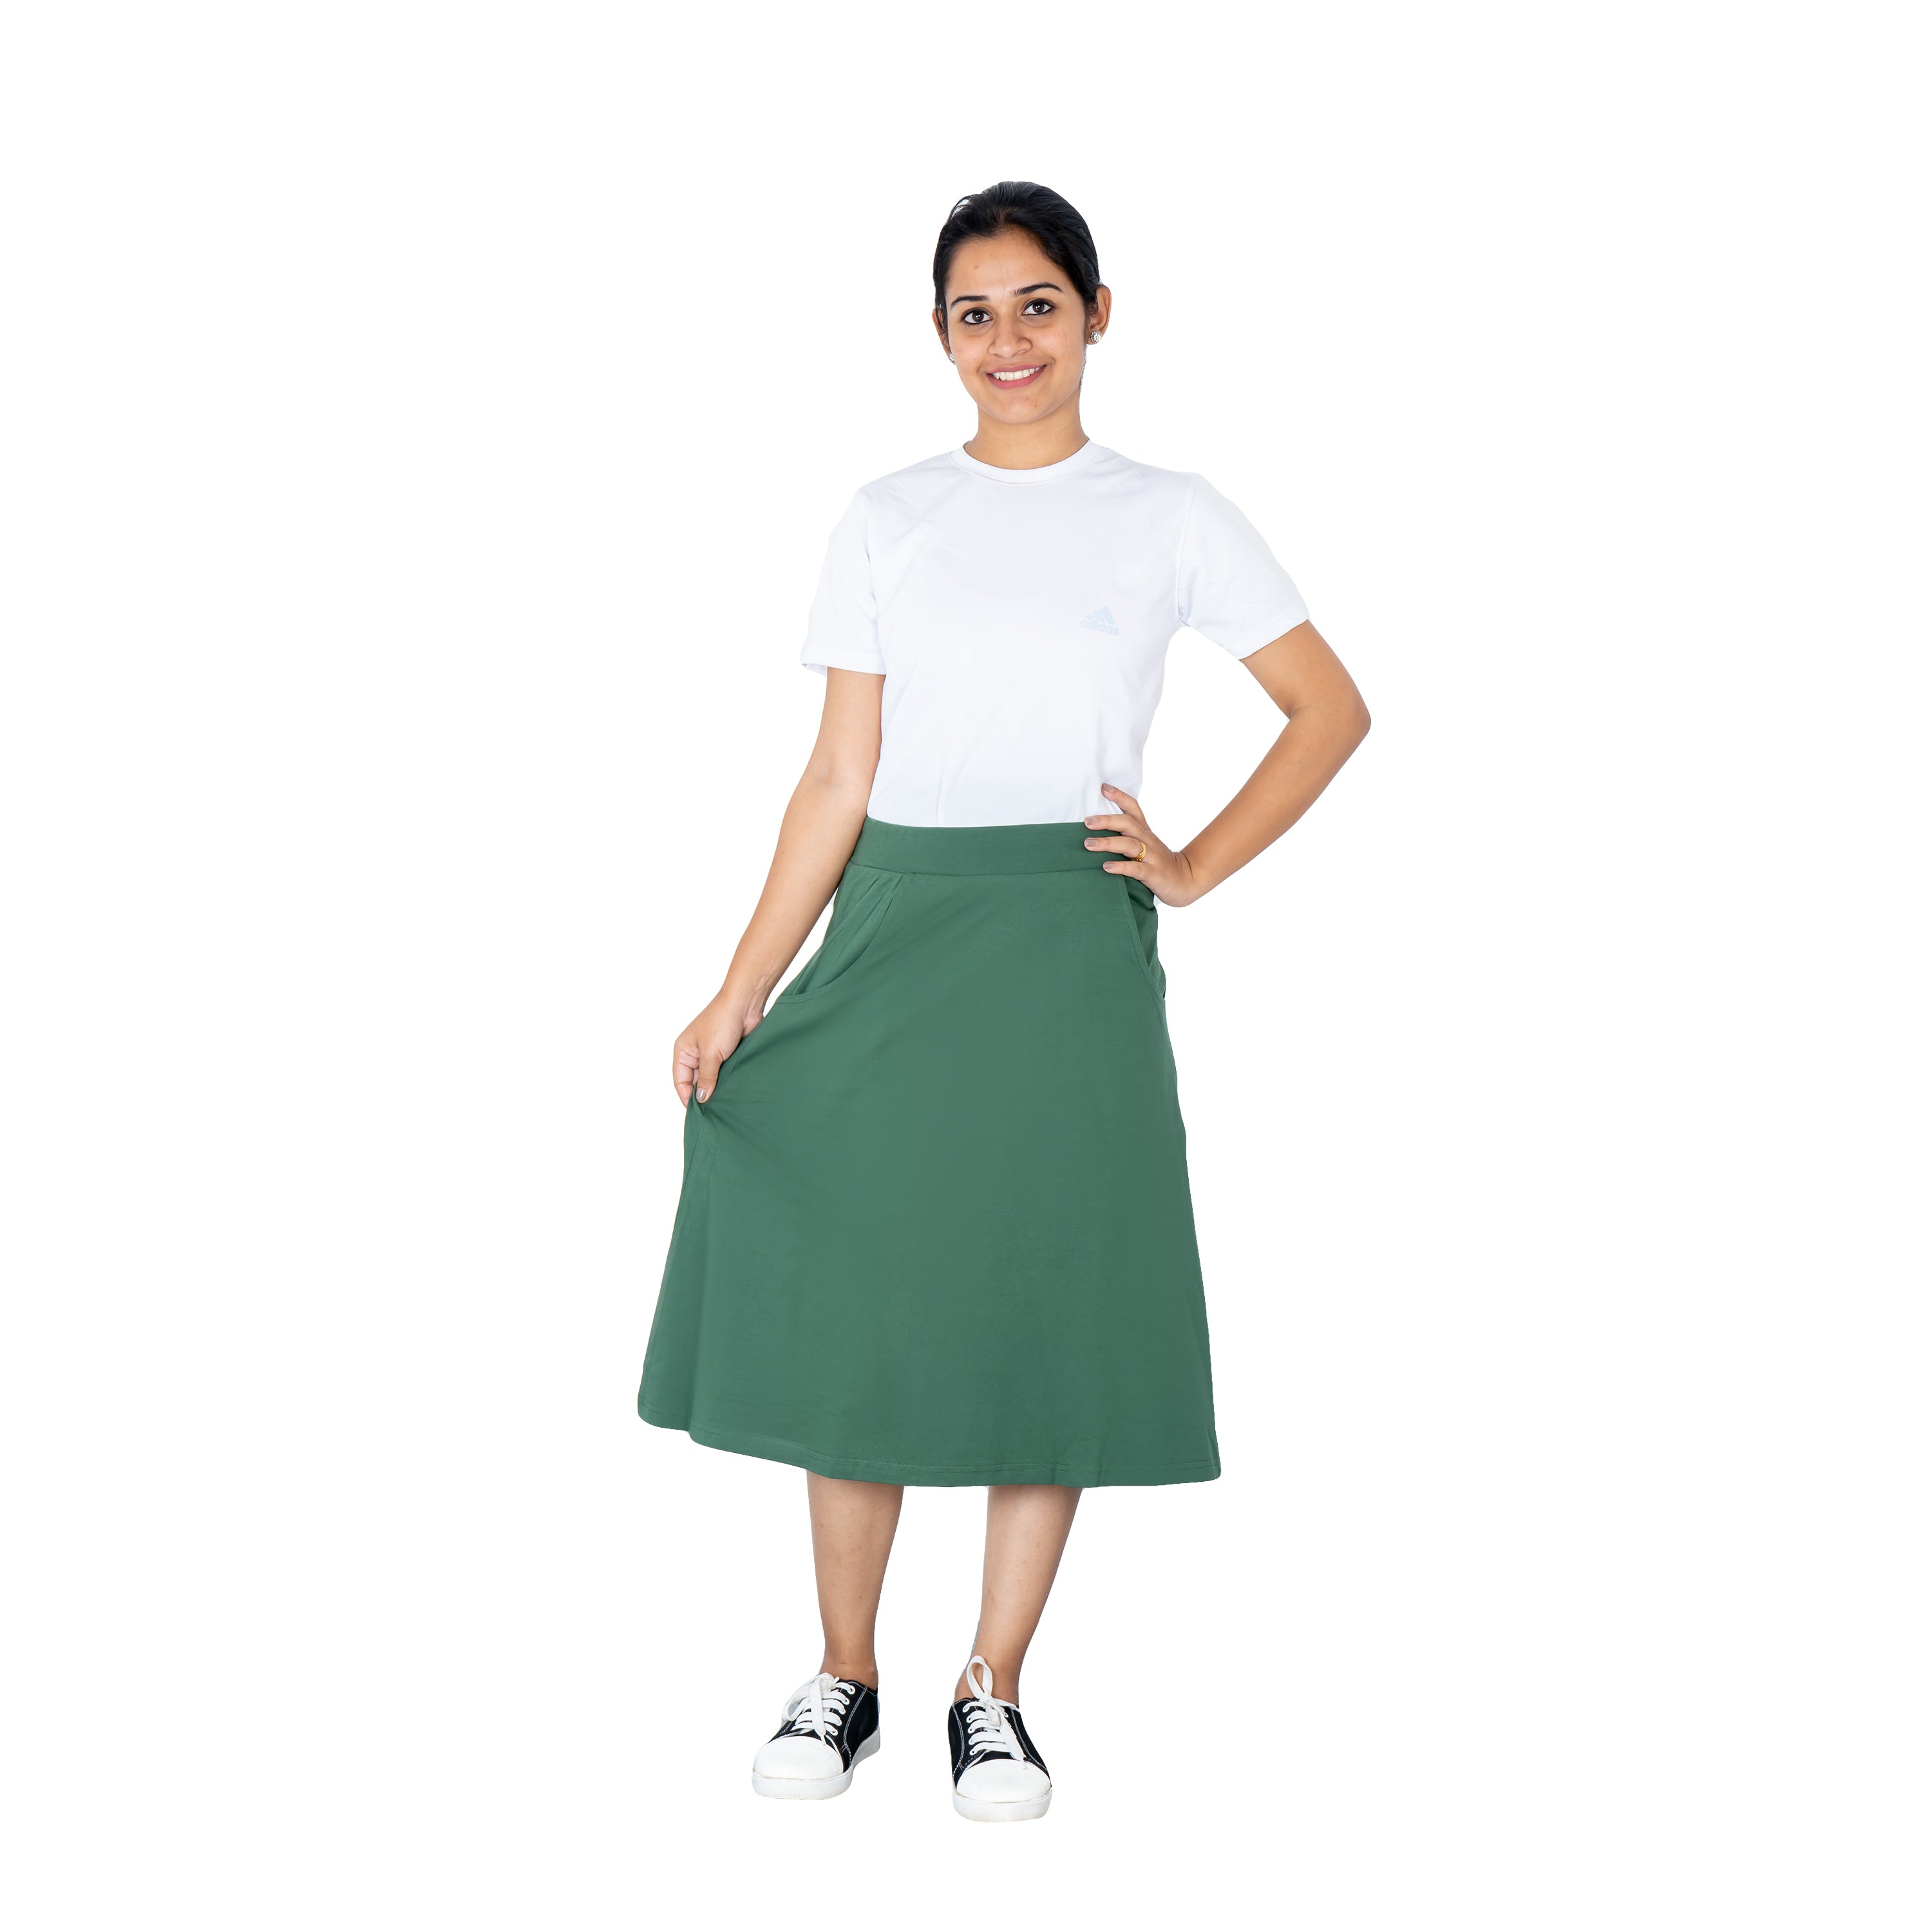 Green A-Line Skirt